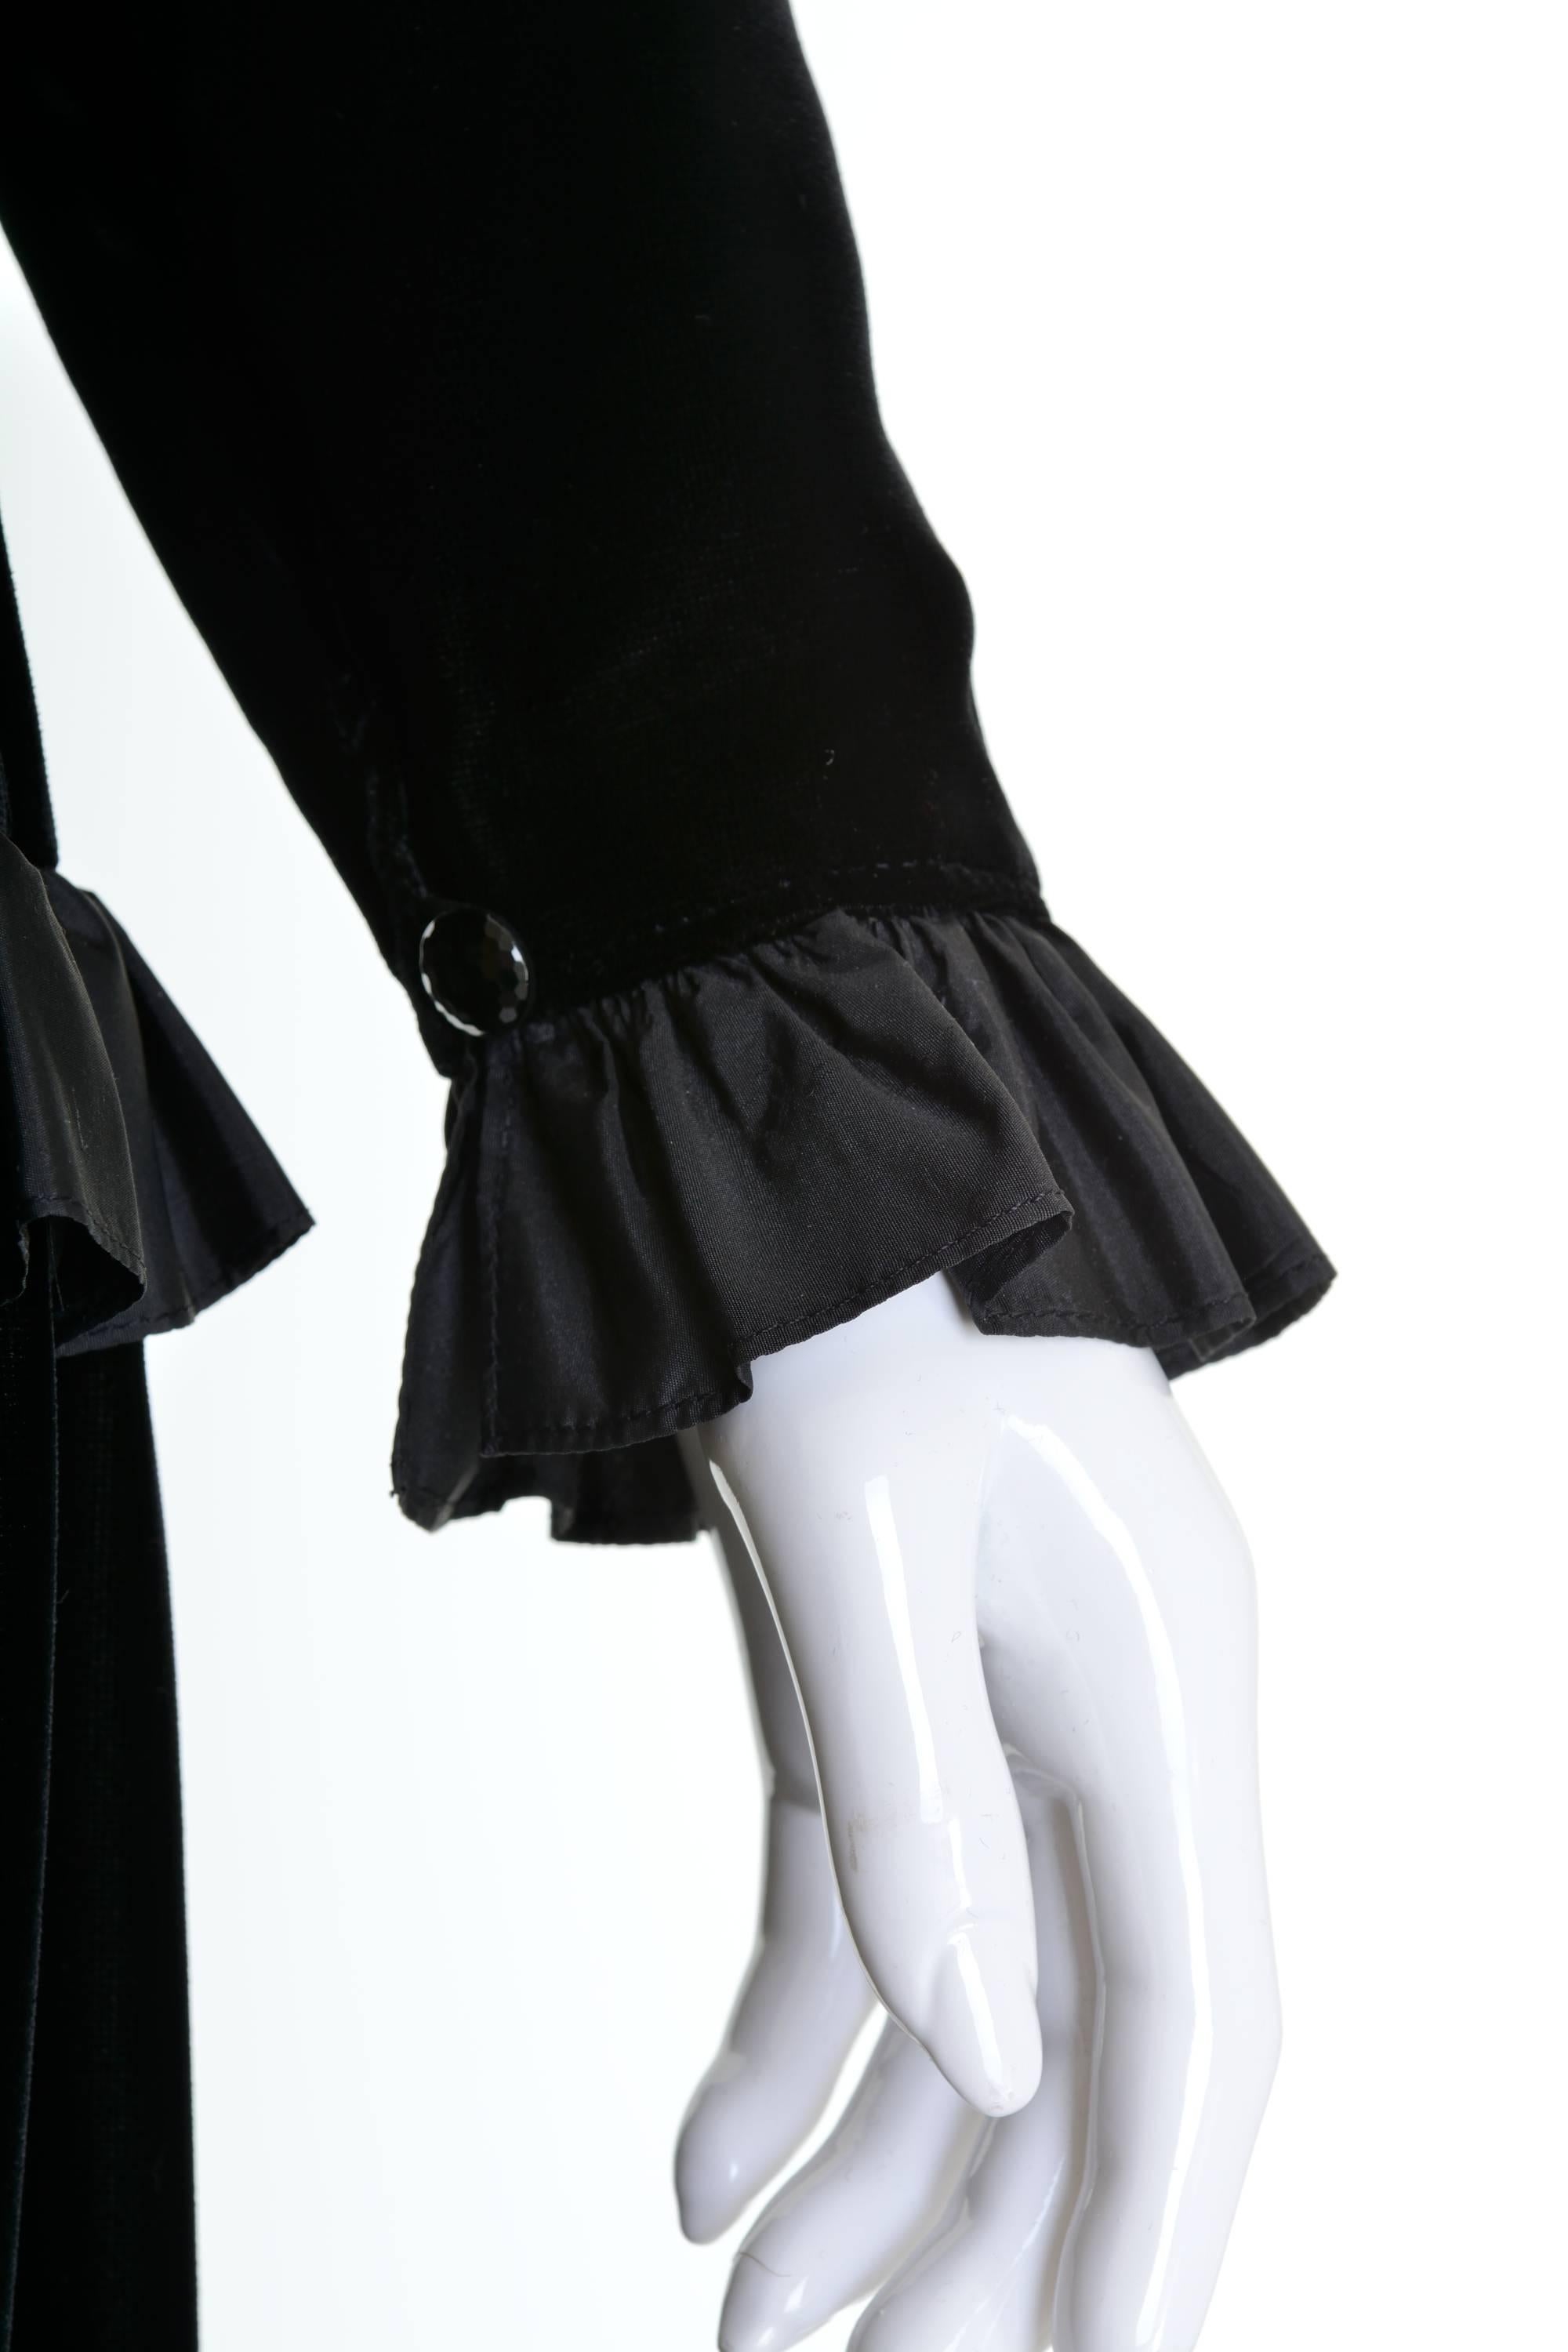 Women's 1980s YVES SAINT LAURENT Rive Gauche Black Velvet Dress